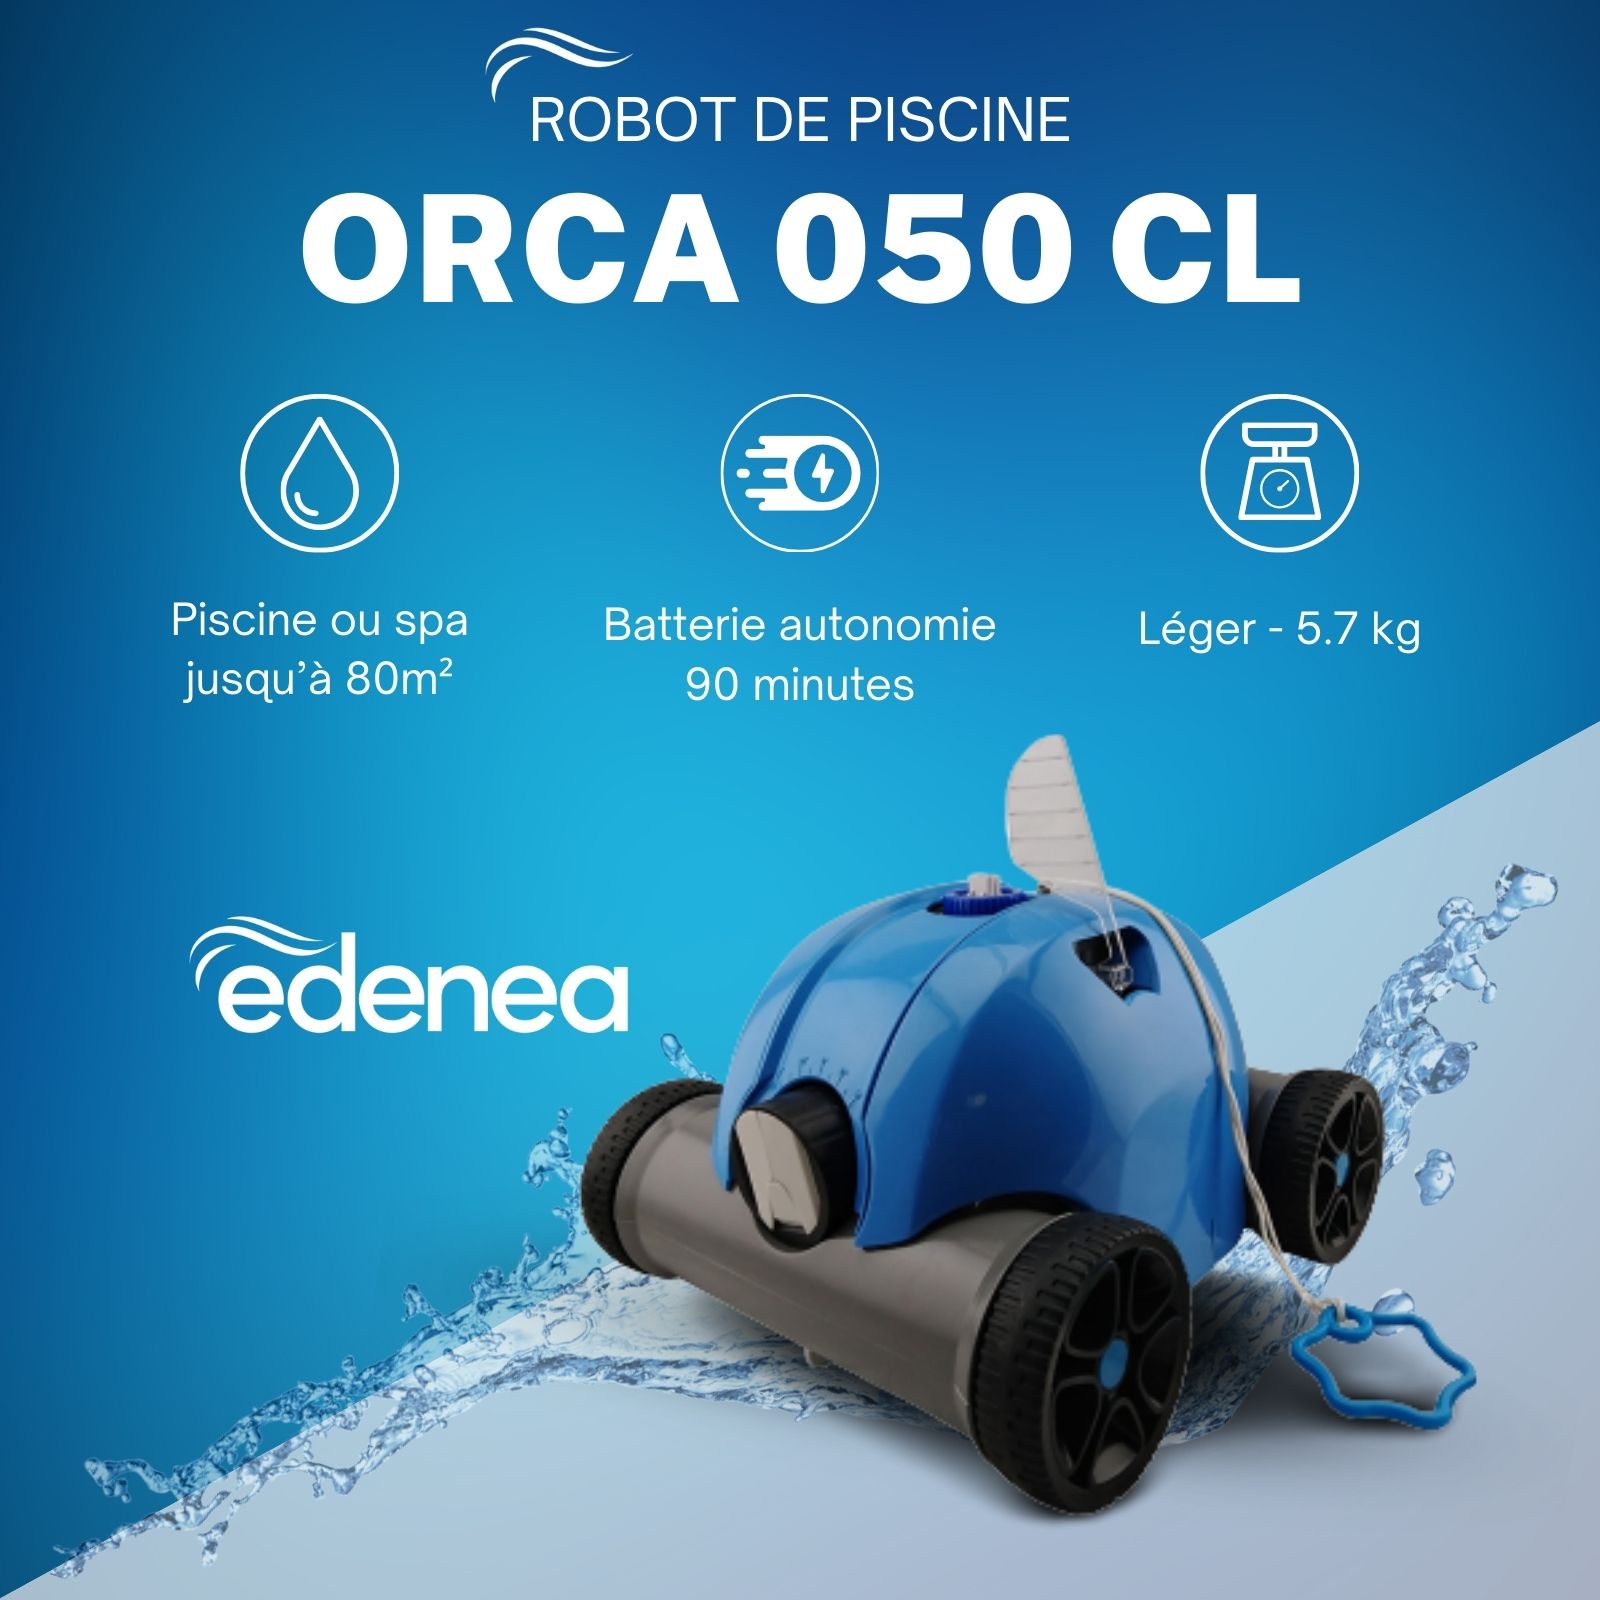 ORCA_050CL robot de piscine sans fil